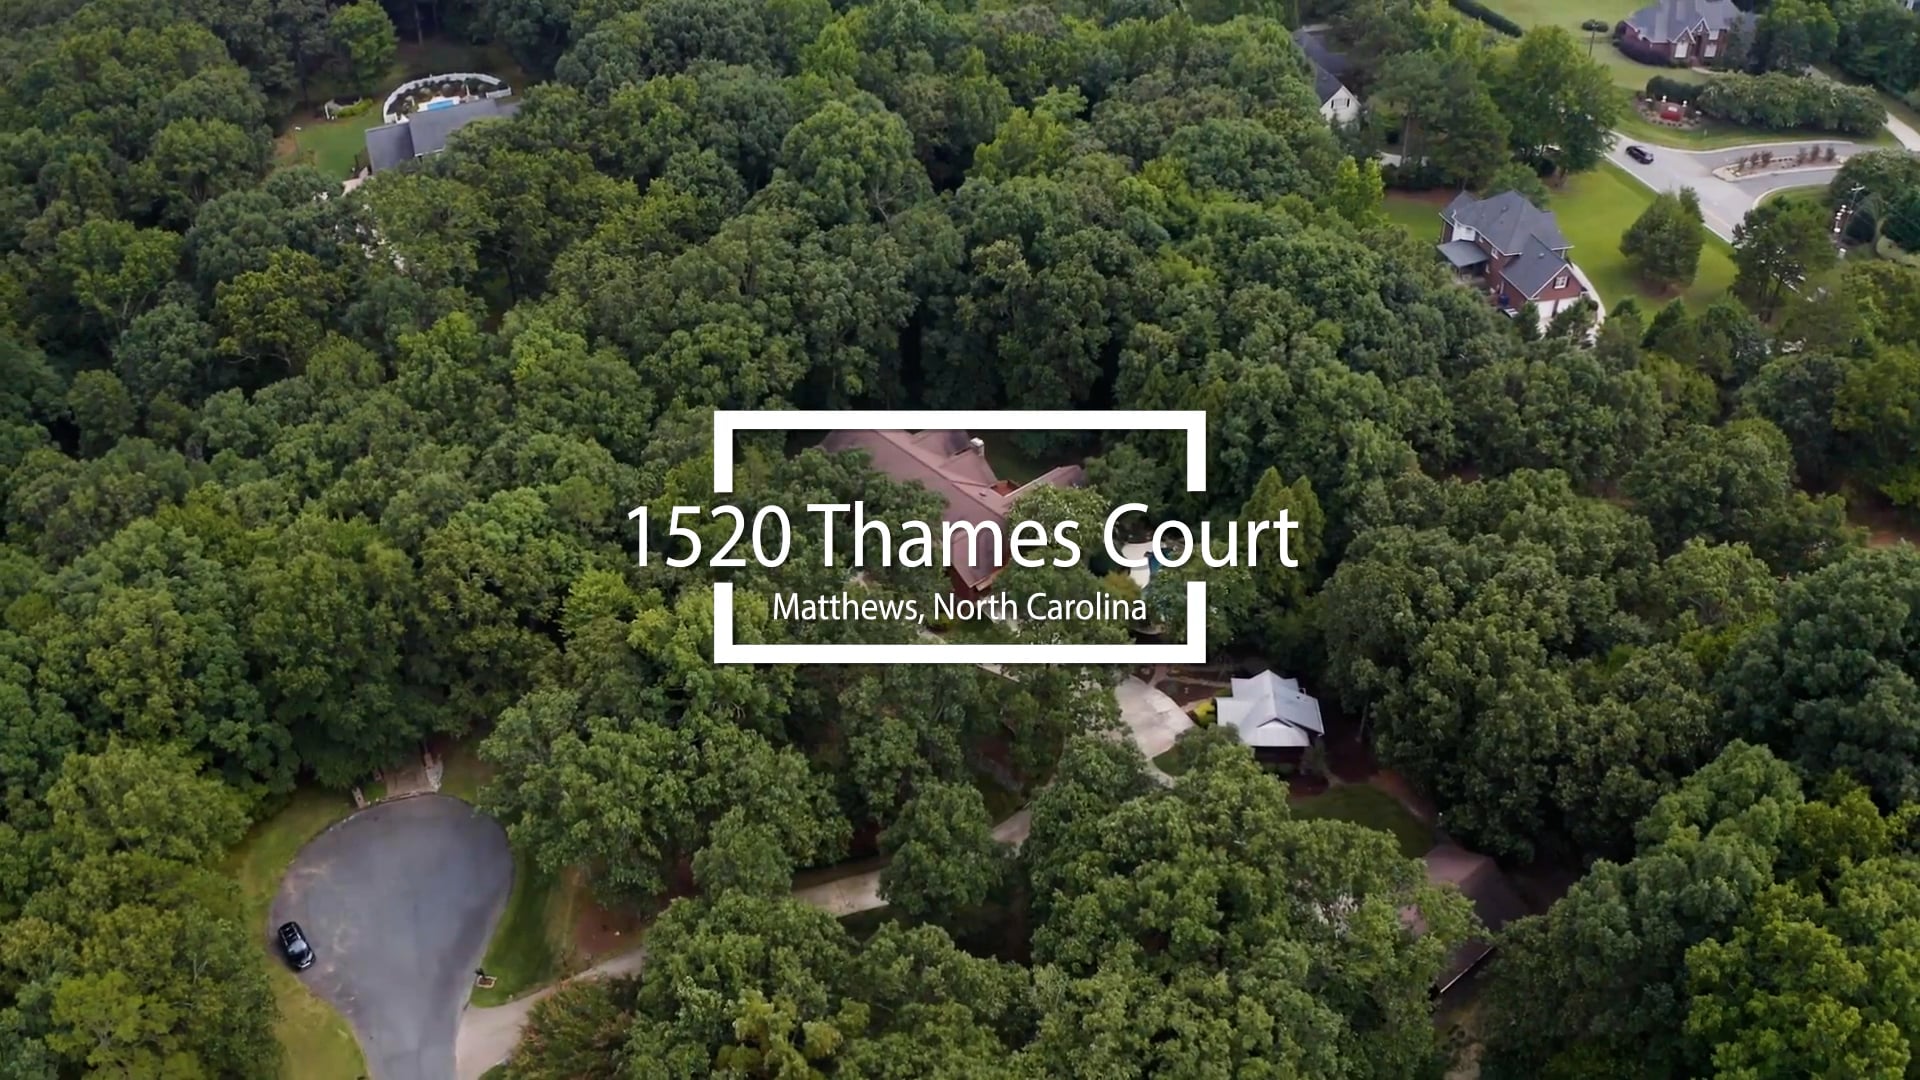 1520 Thames Court videos Un Branded.mp4